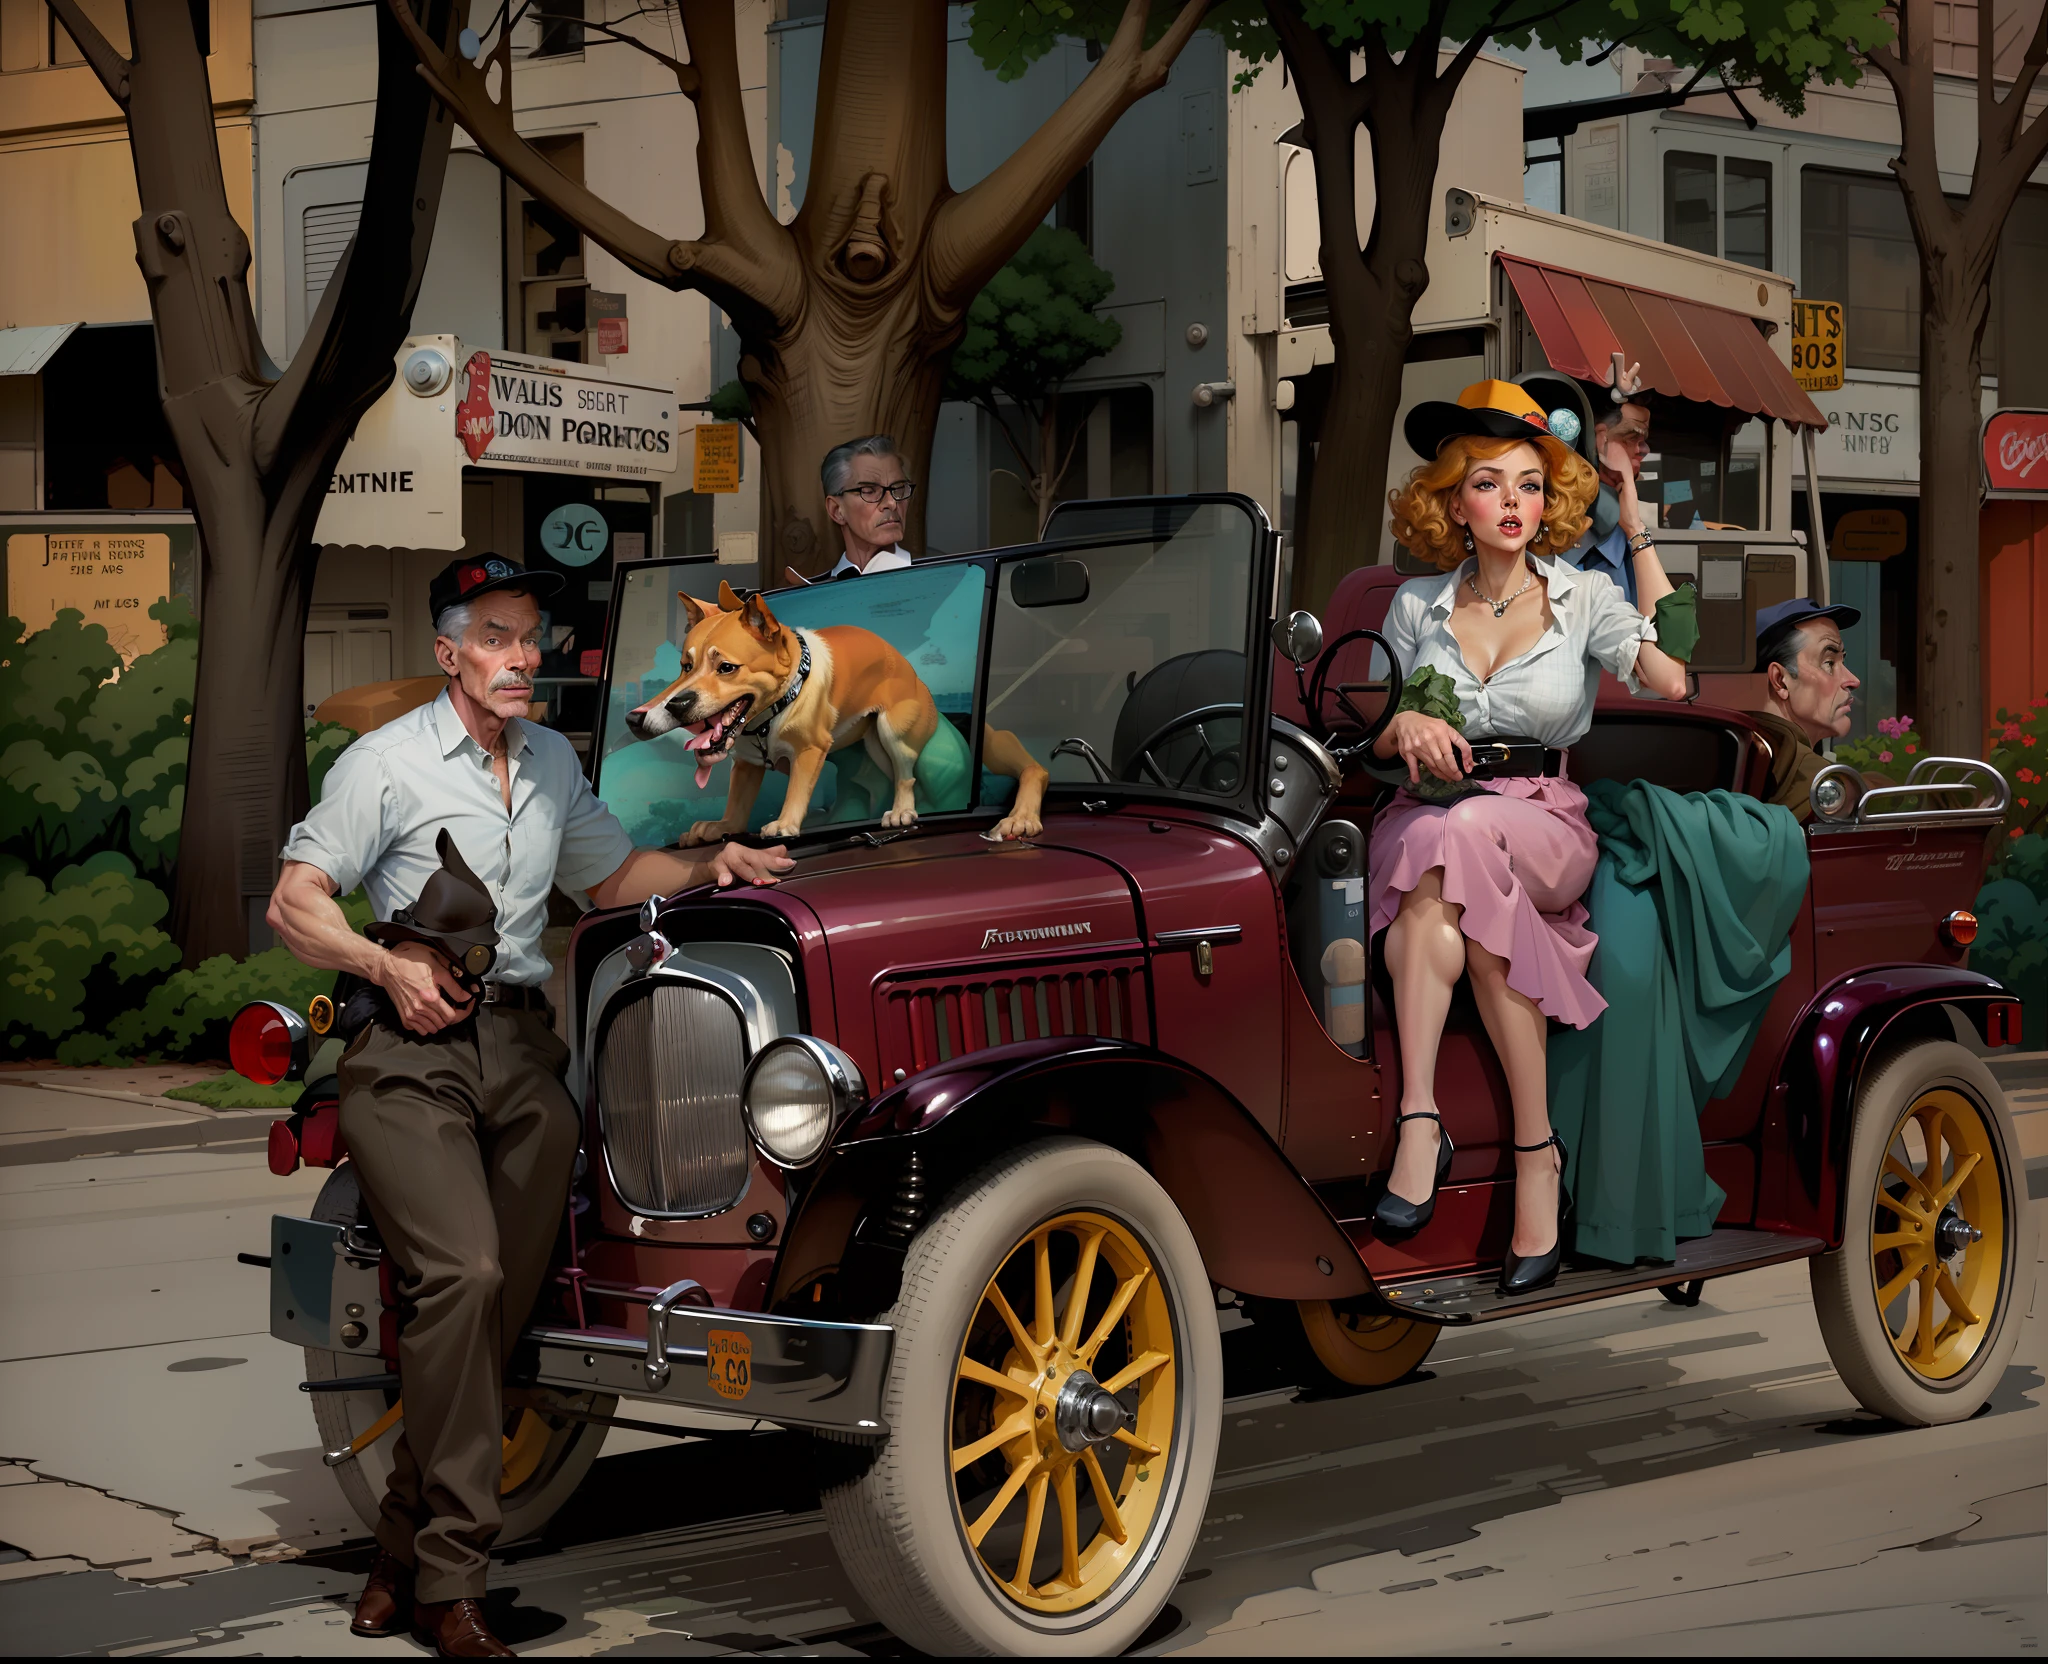 有一个男人和一个女人和一只狗坐在车里, 彩色的 background, 彩色的, 彩色的 photo, 作者：阿特·菲茨帕特里克, 彩色的, 灵感来自奥斯汀·布里格斯, ( 藝術菲茨帕特里克 ), 數位彩色, 諾曼洛克威爾風格, 灵感来自亨利·贾斯蒂斯·福特, 諾曼洛克威爾的風格, 受到约翰·弗伦奇·斯隆的启发, 全彩插圖, a 彩色的 photo